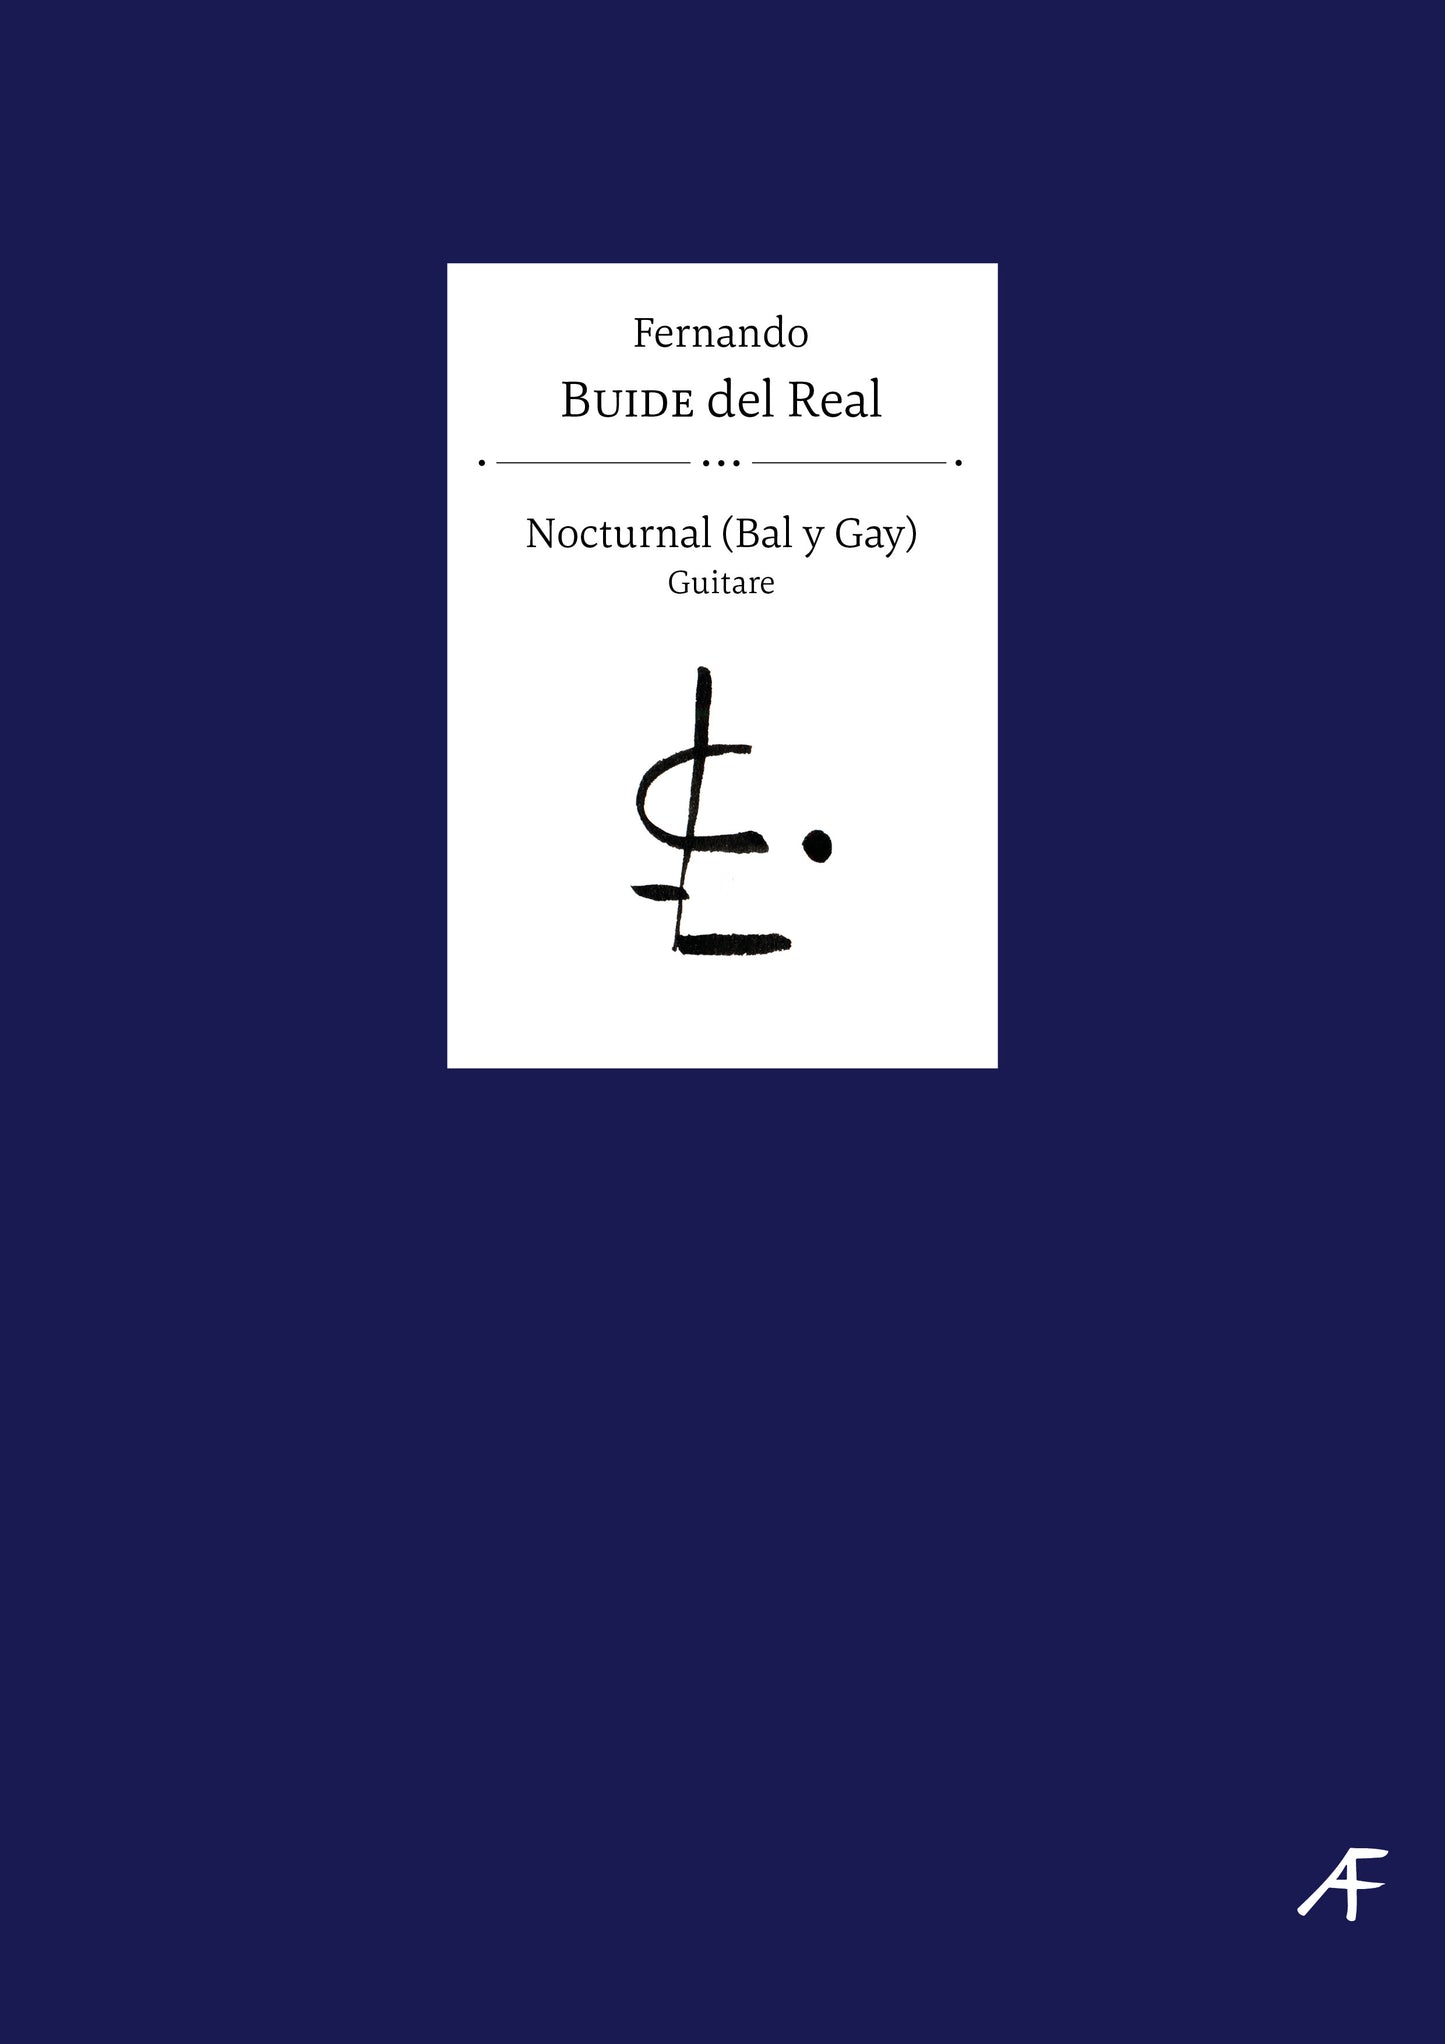 Nocturnal (Bal y Gay) - Fernando Buide del Real